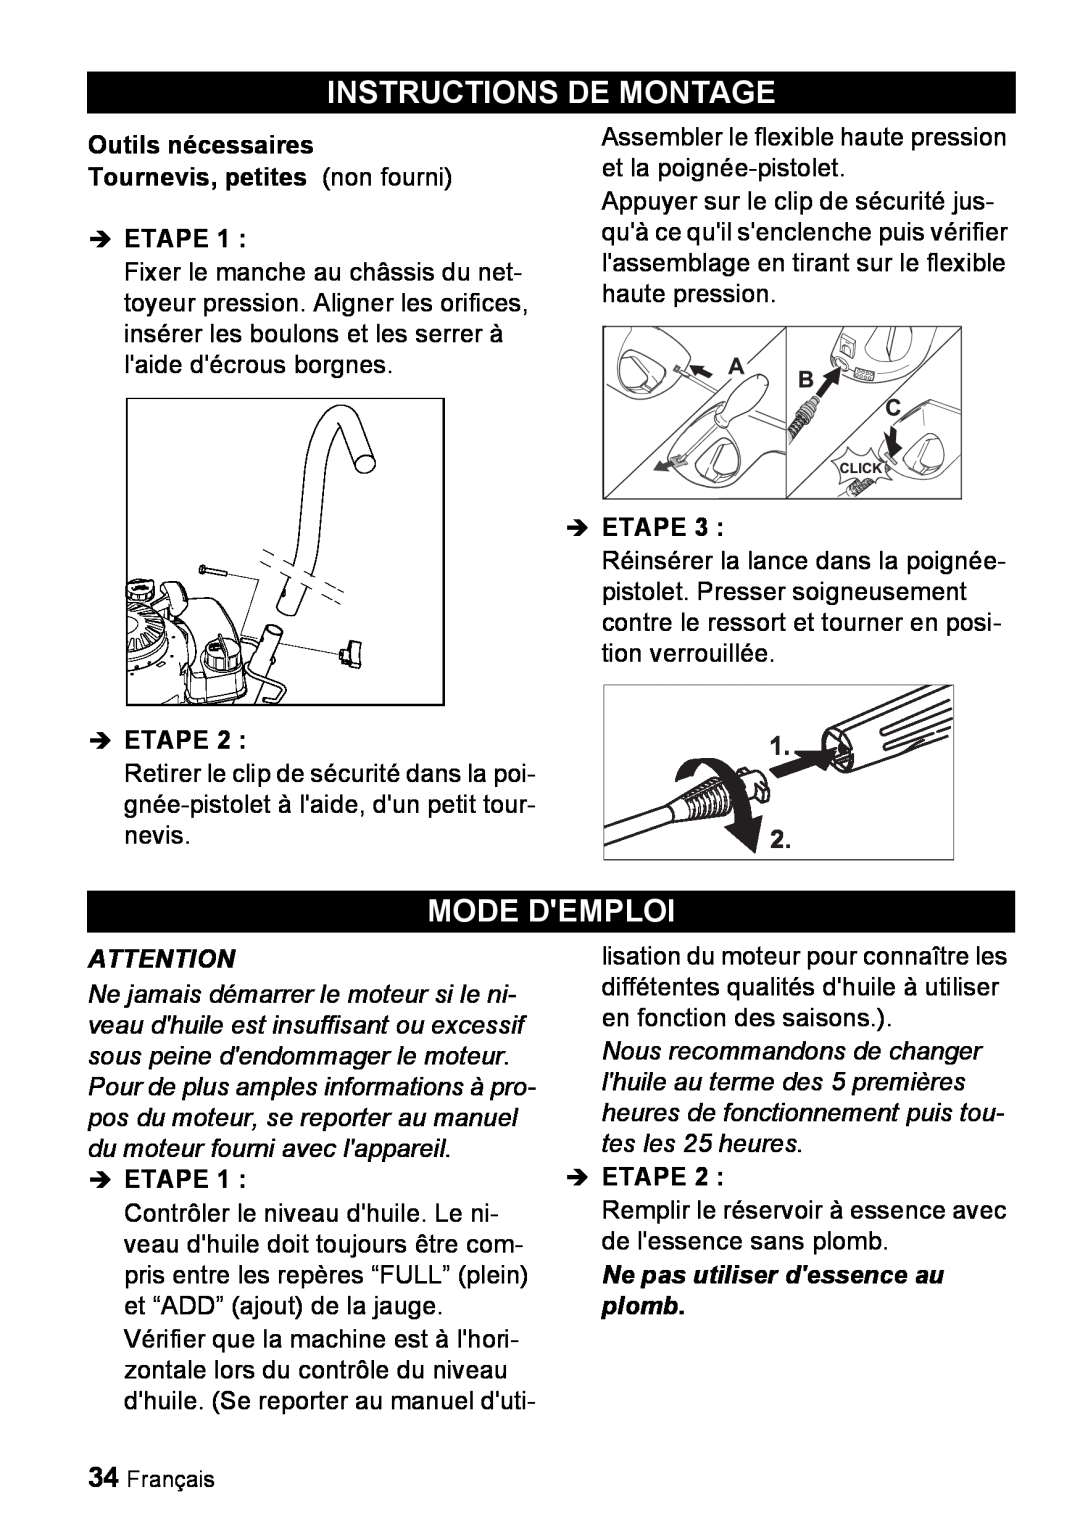 Karcher G 2000 ET manual Instructions De Montage, Mode Demploi, Ne pas utiliser dessence au plomb 